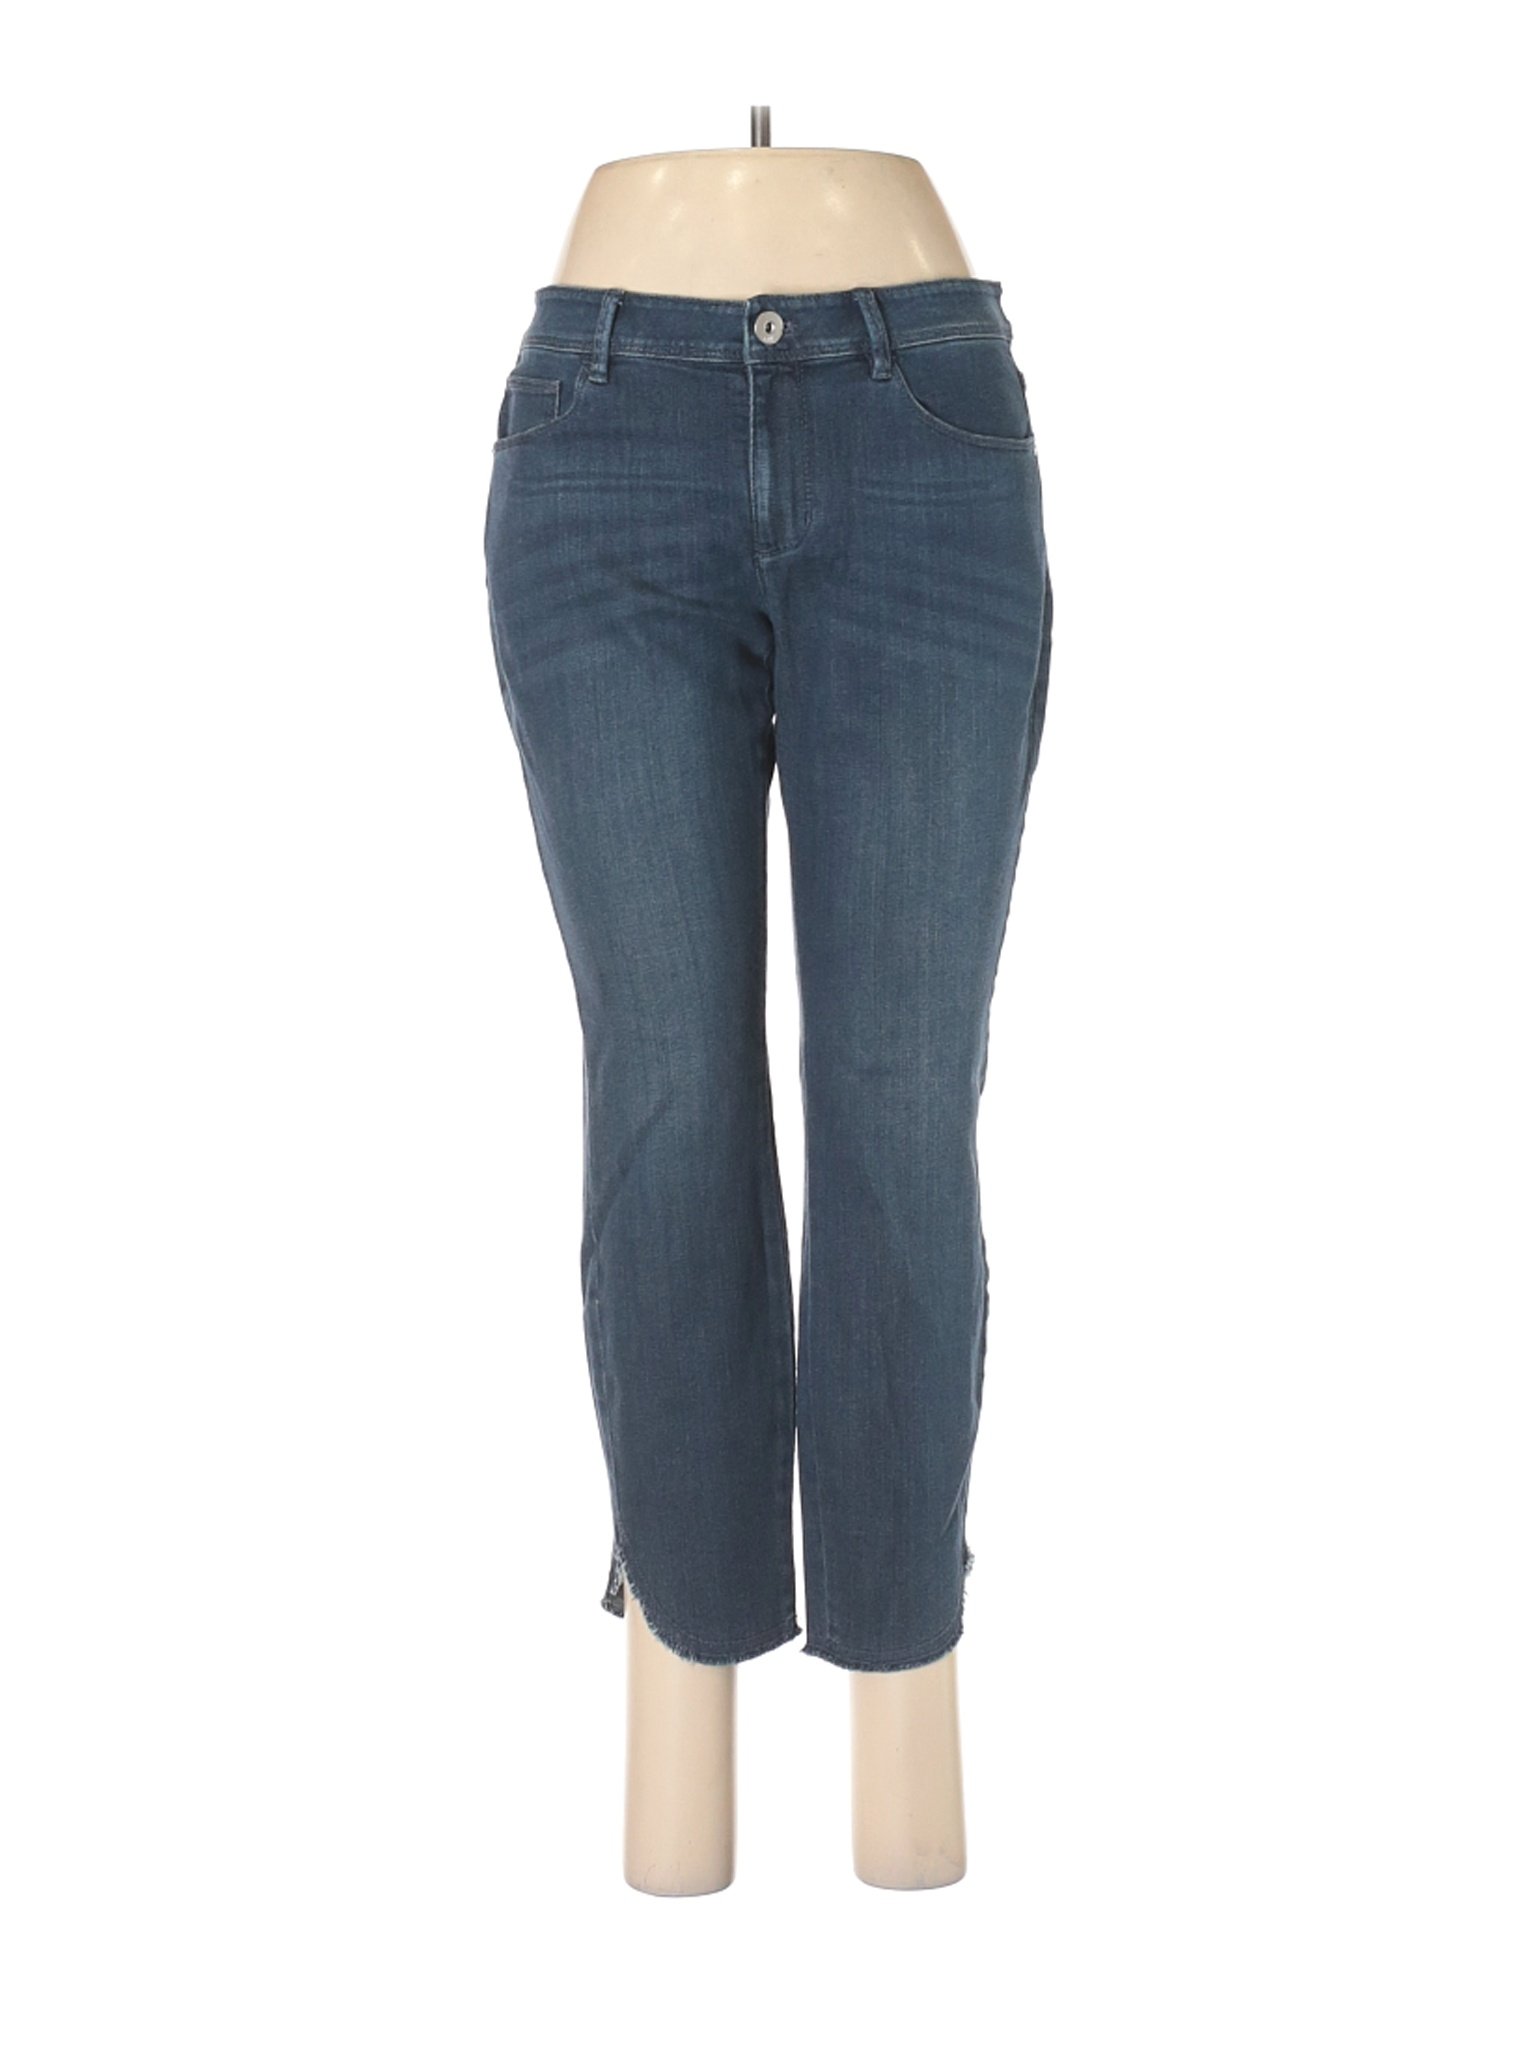 J.Jill Women Blue Jeans 6 Petites | eBay